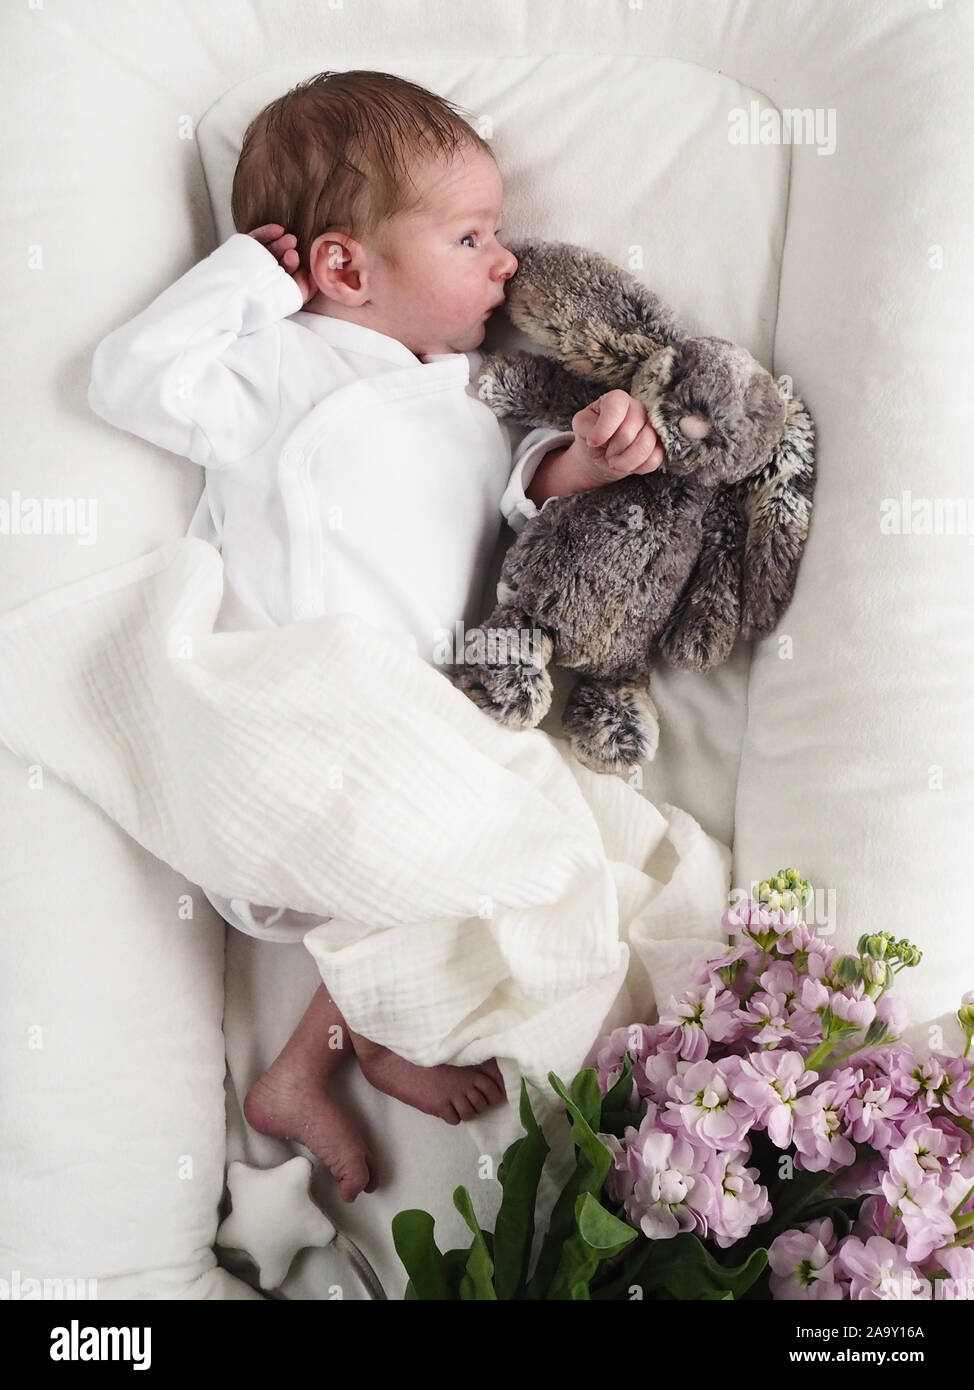 Neugeborenes Baby Boy liegend auf Bett und Schlafen mit Teddybär. Ihr Baby braucht seinen Schlaf. Blumenschmuck der kinder Bett Stockfoto